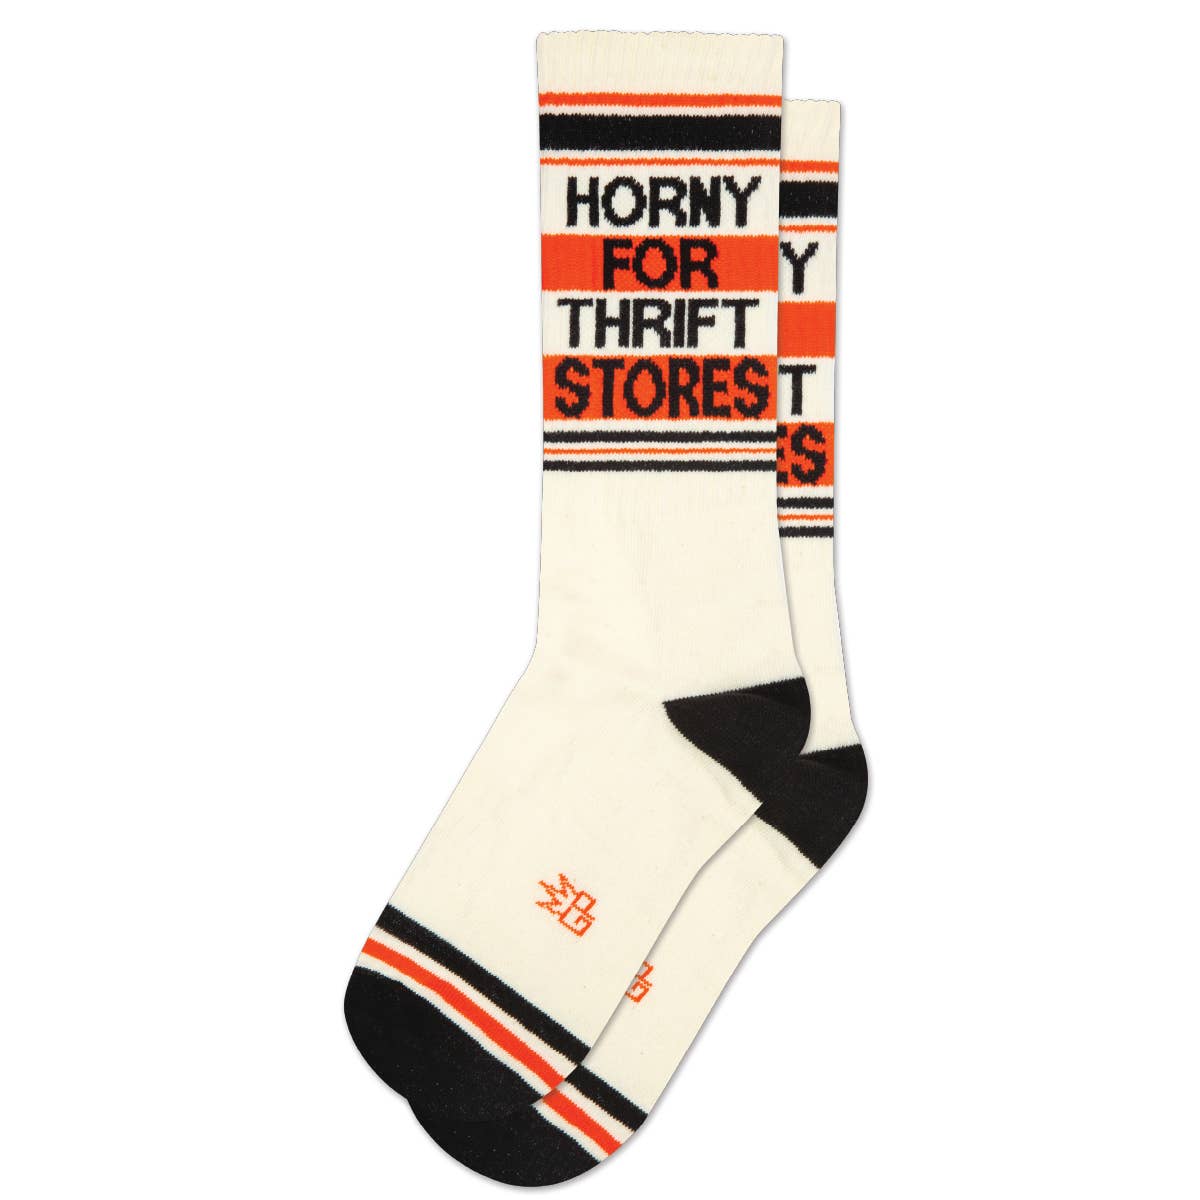 Socks - Horny for Thrift Stores